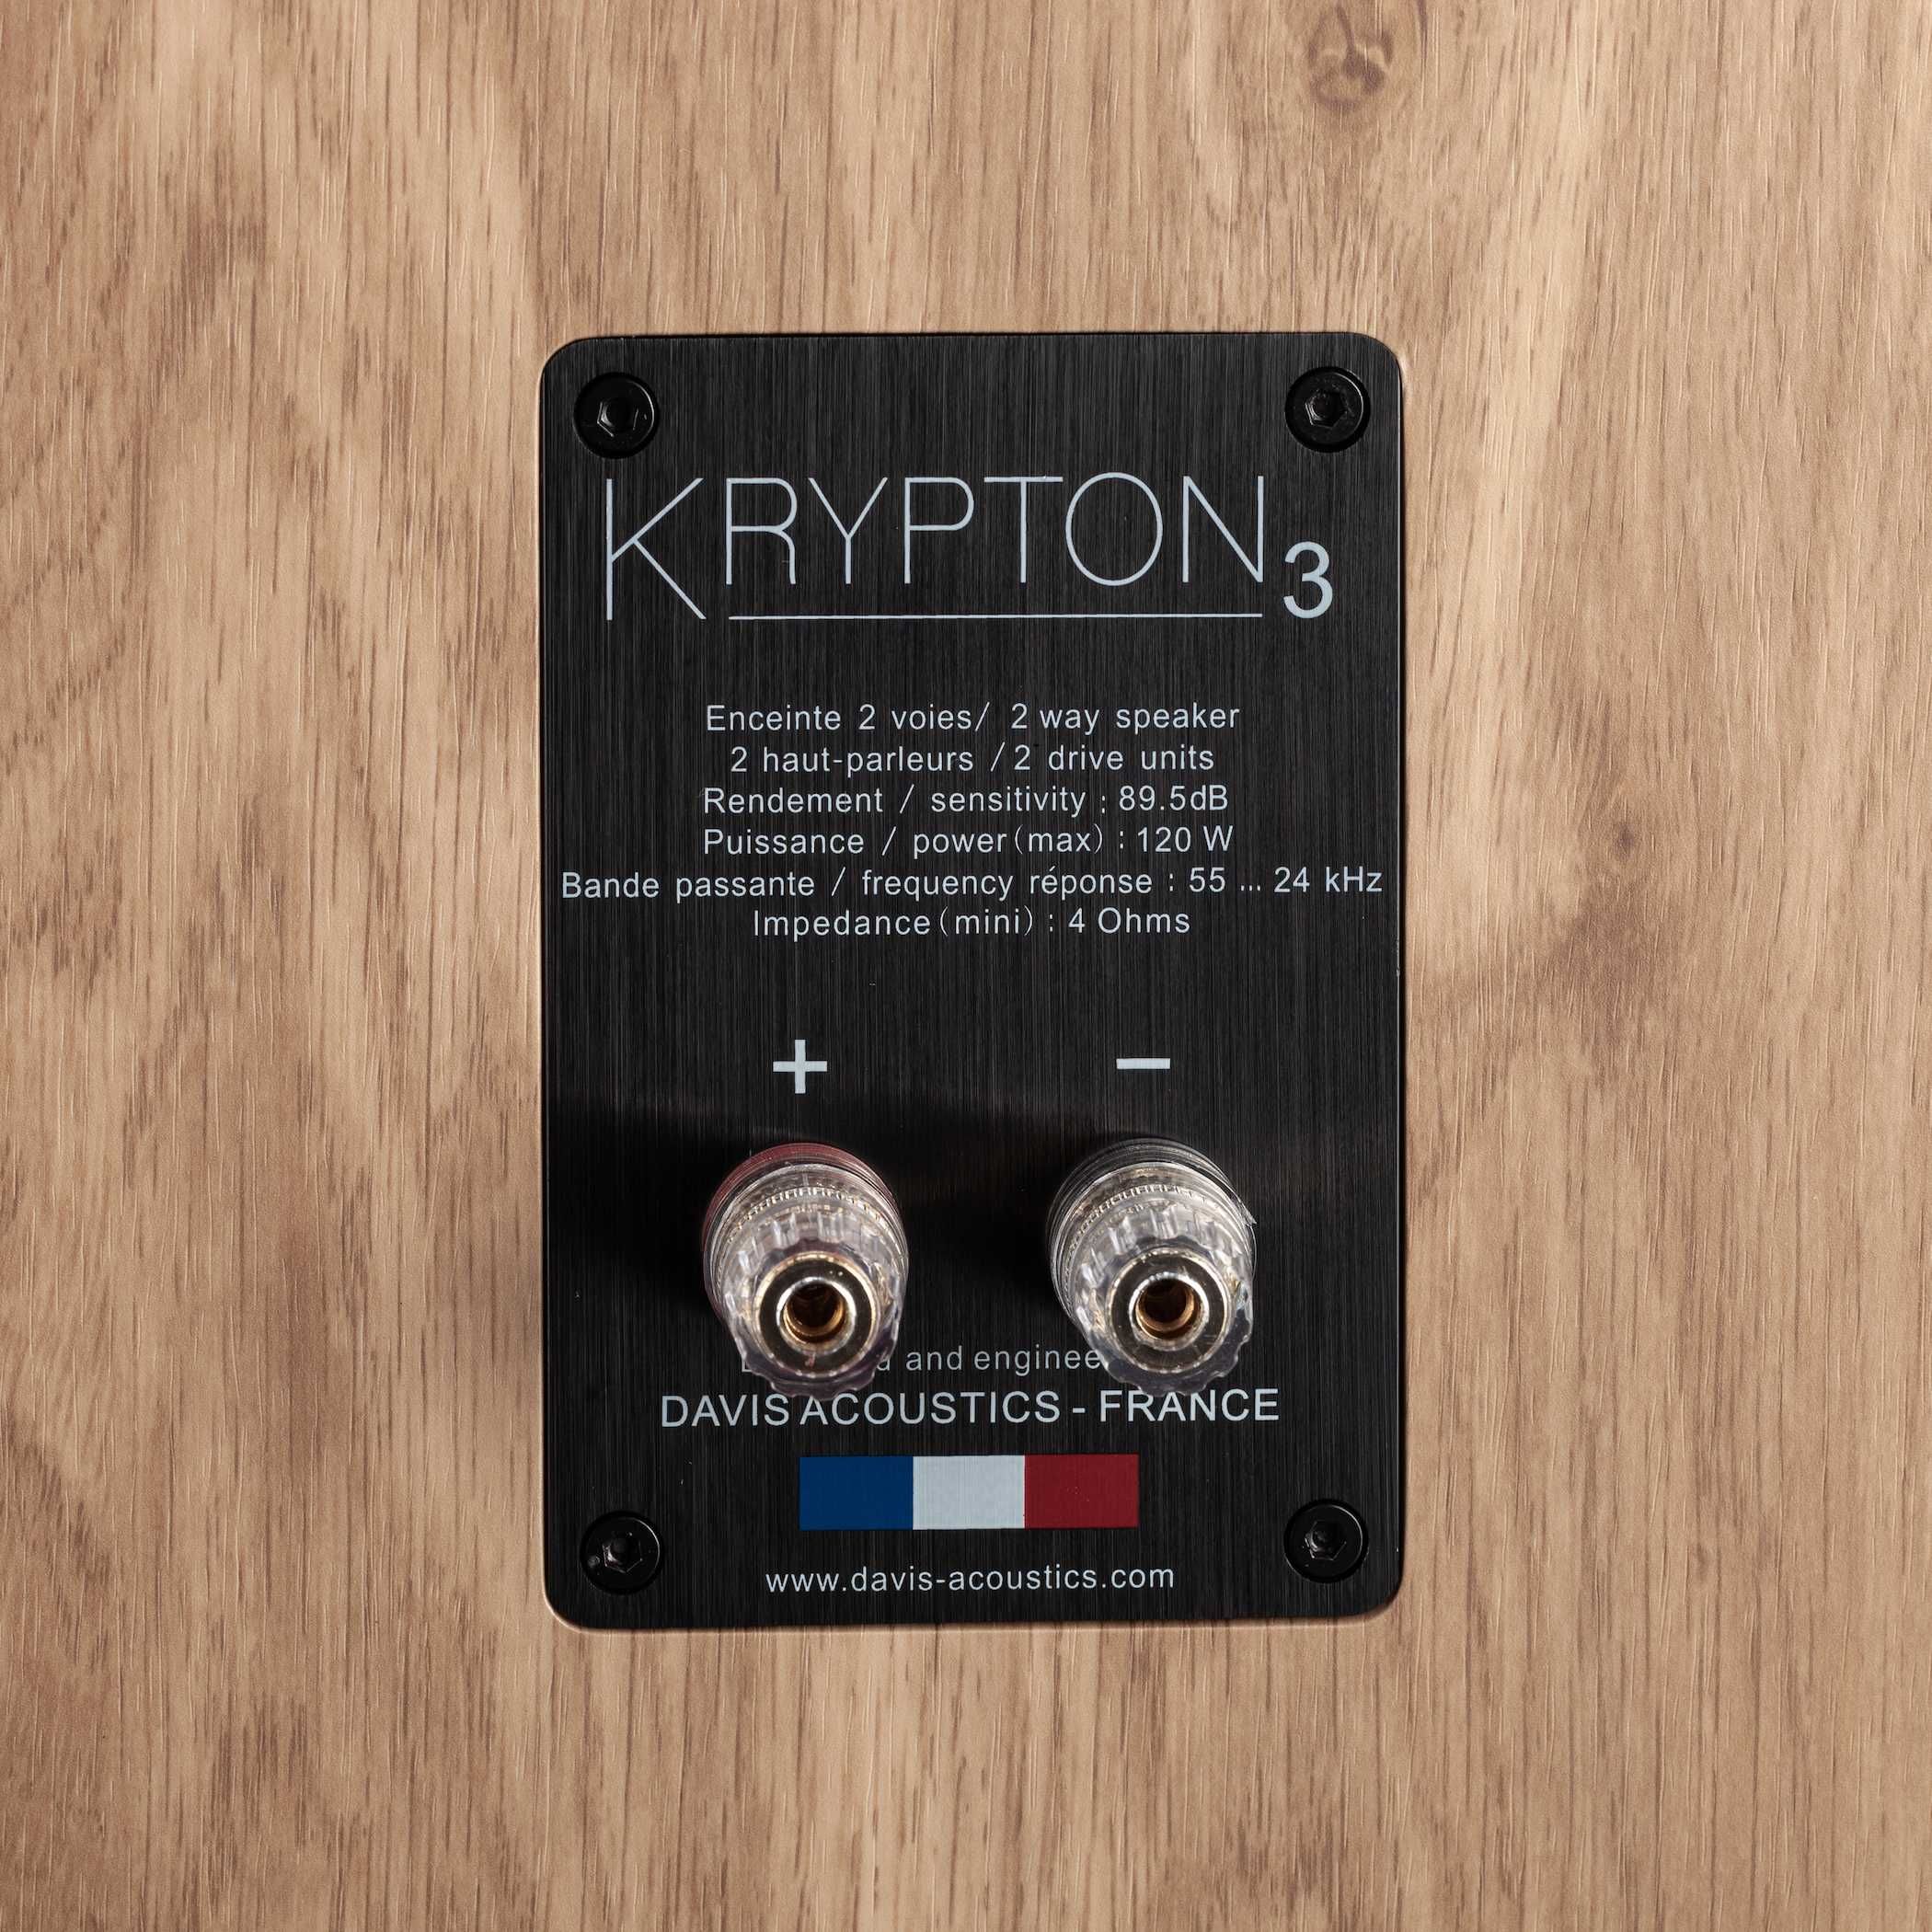 Davis Acoustics Krypton 3 AudioMix Kraków